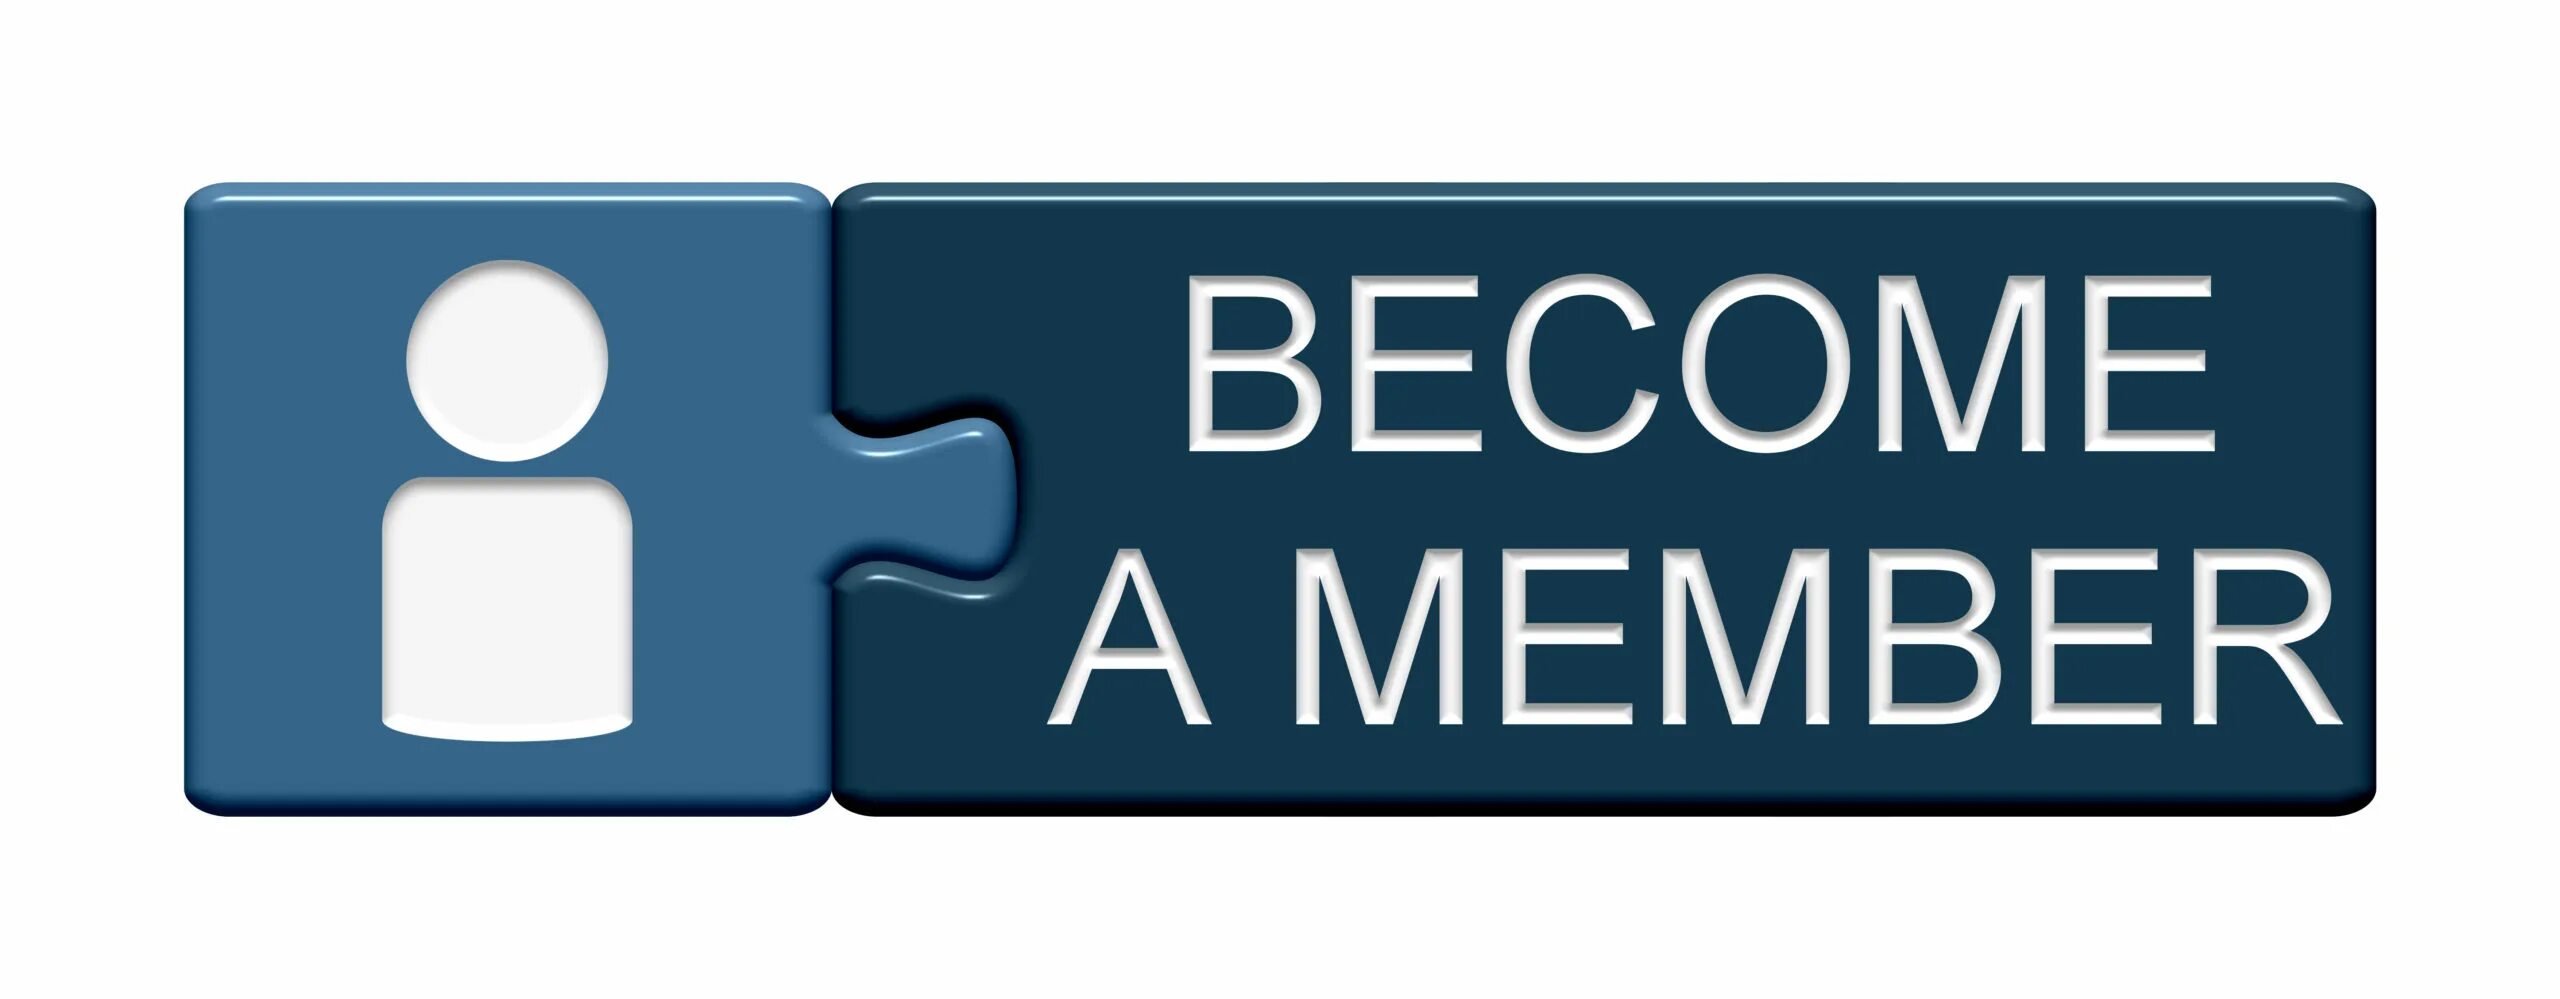 Become a member. Member картинки. Стать дилером кнопка. Присоединяйся иконка.